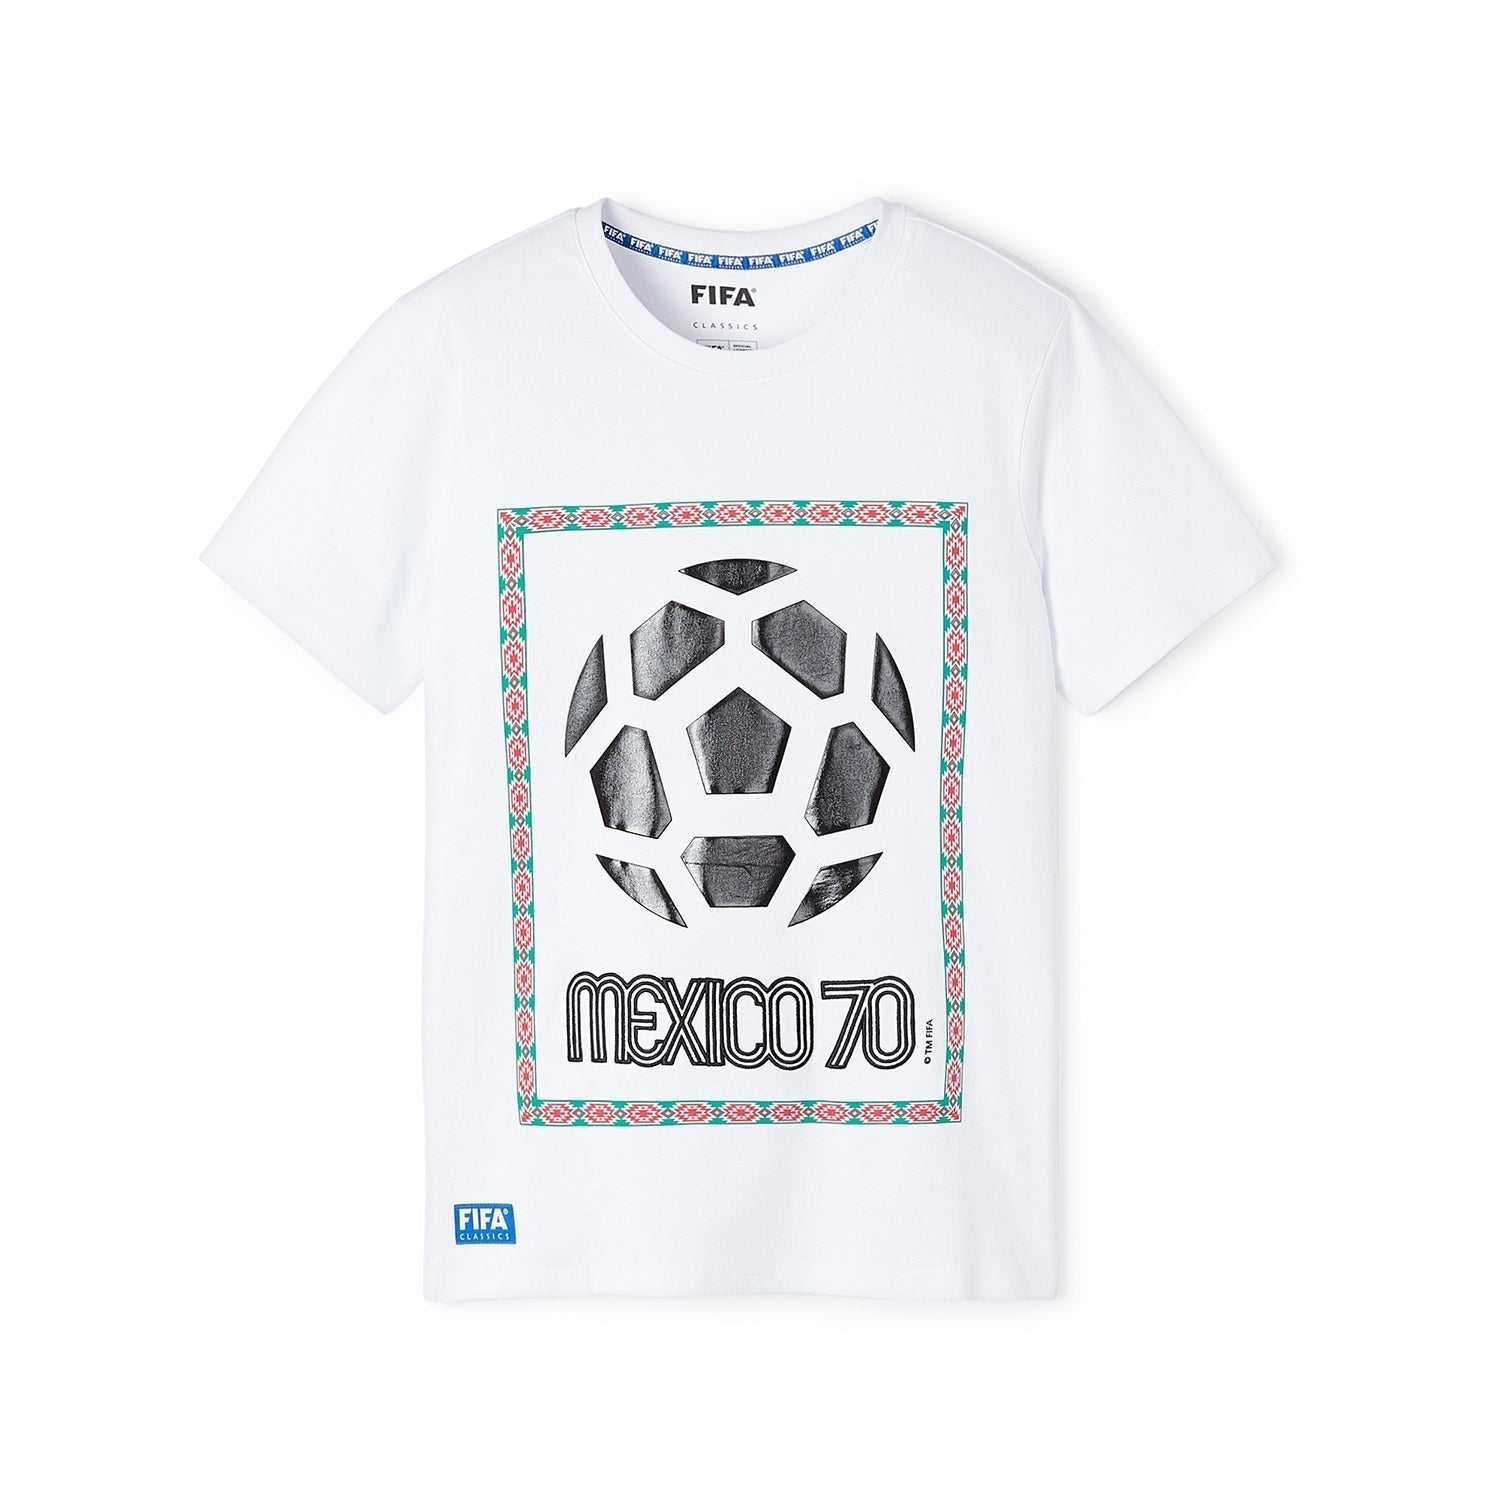 FIFA Rewind Mexico '70 - Emblem Aztec T-Shirt - Men's